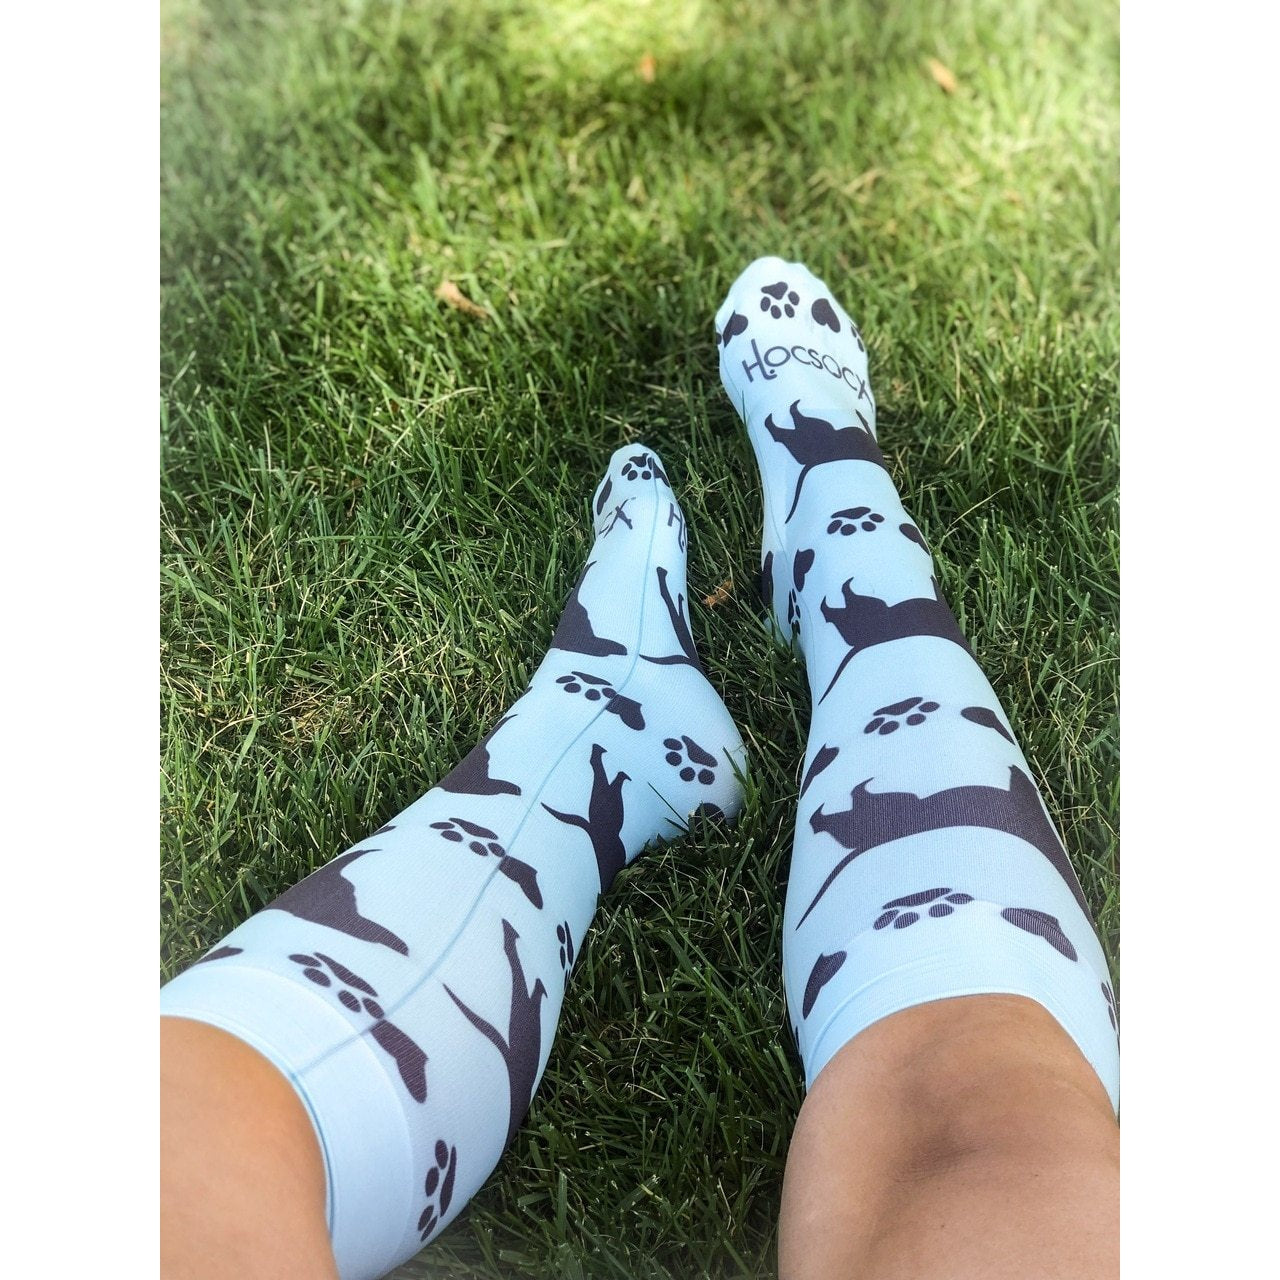 Hocsocx Dog Print Liner Socks